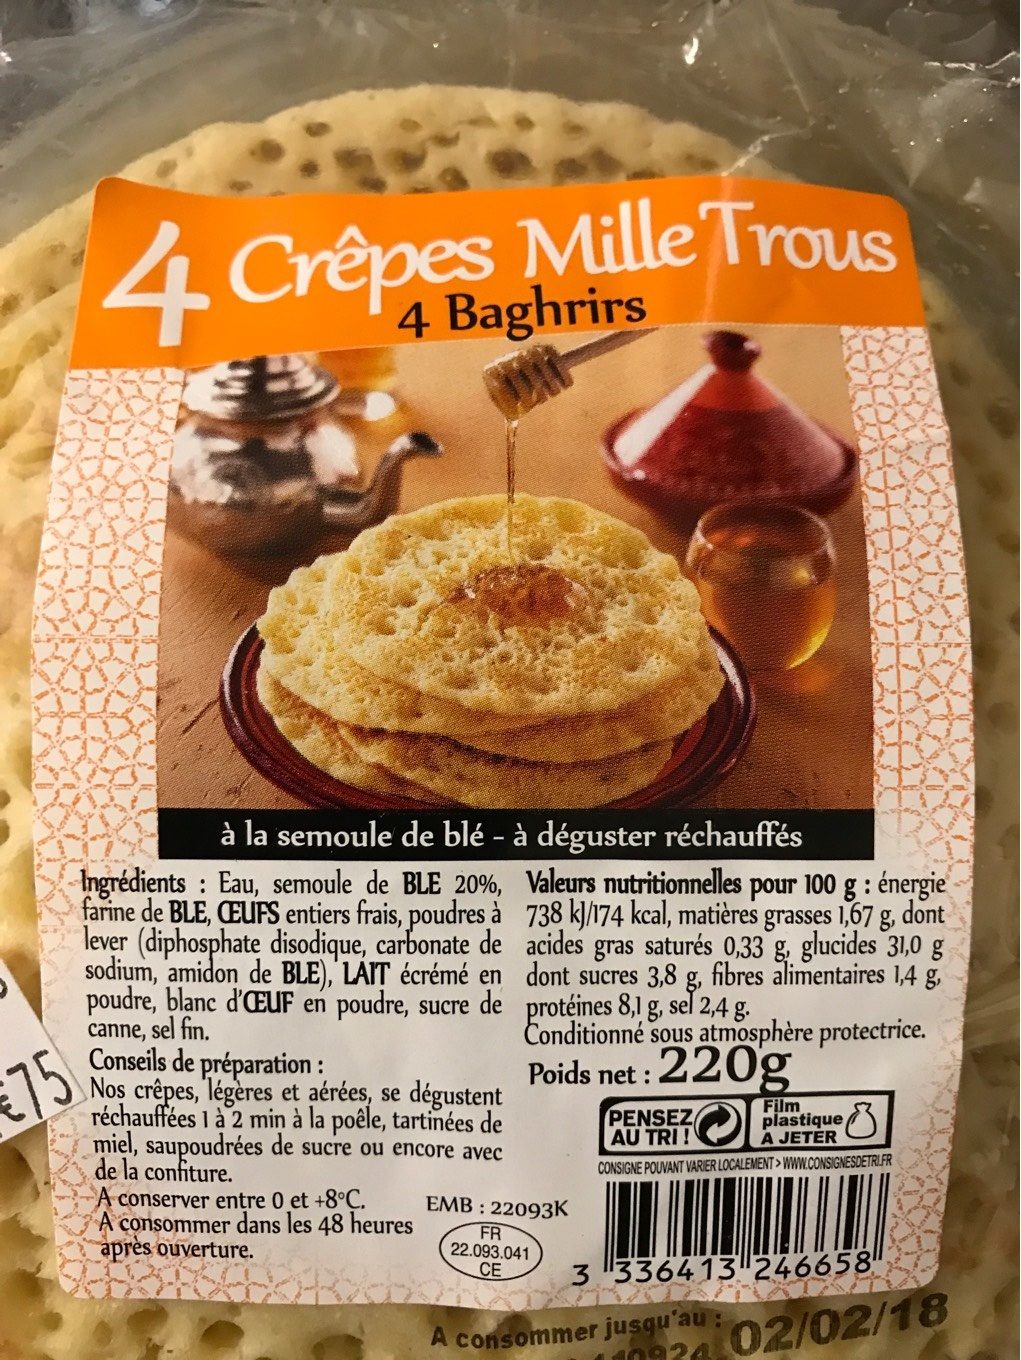 4 crêpes mille trous - Product - fr